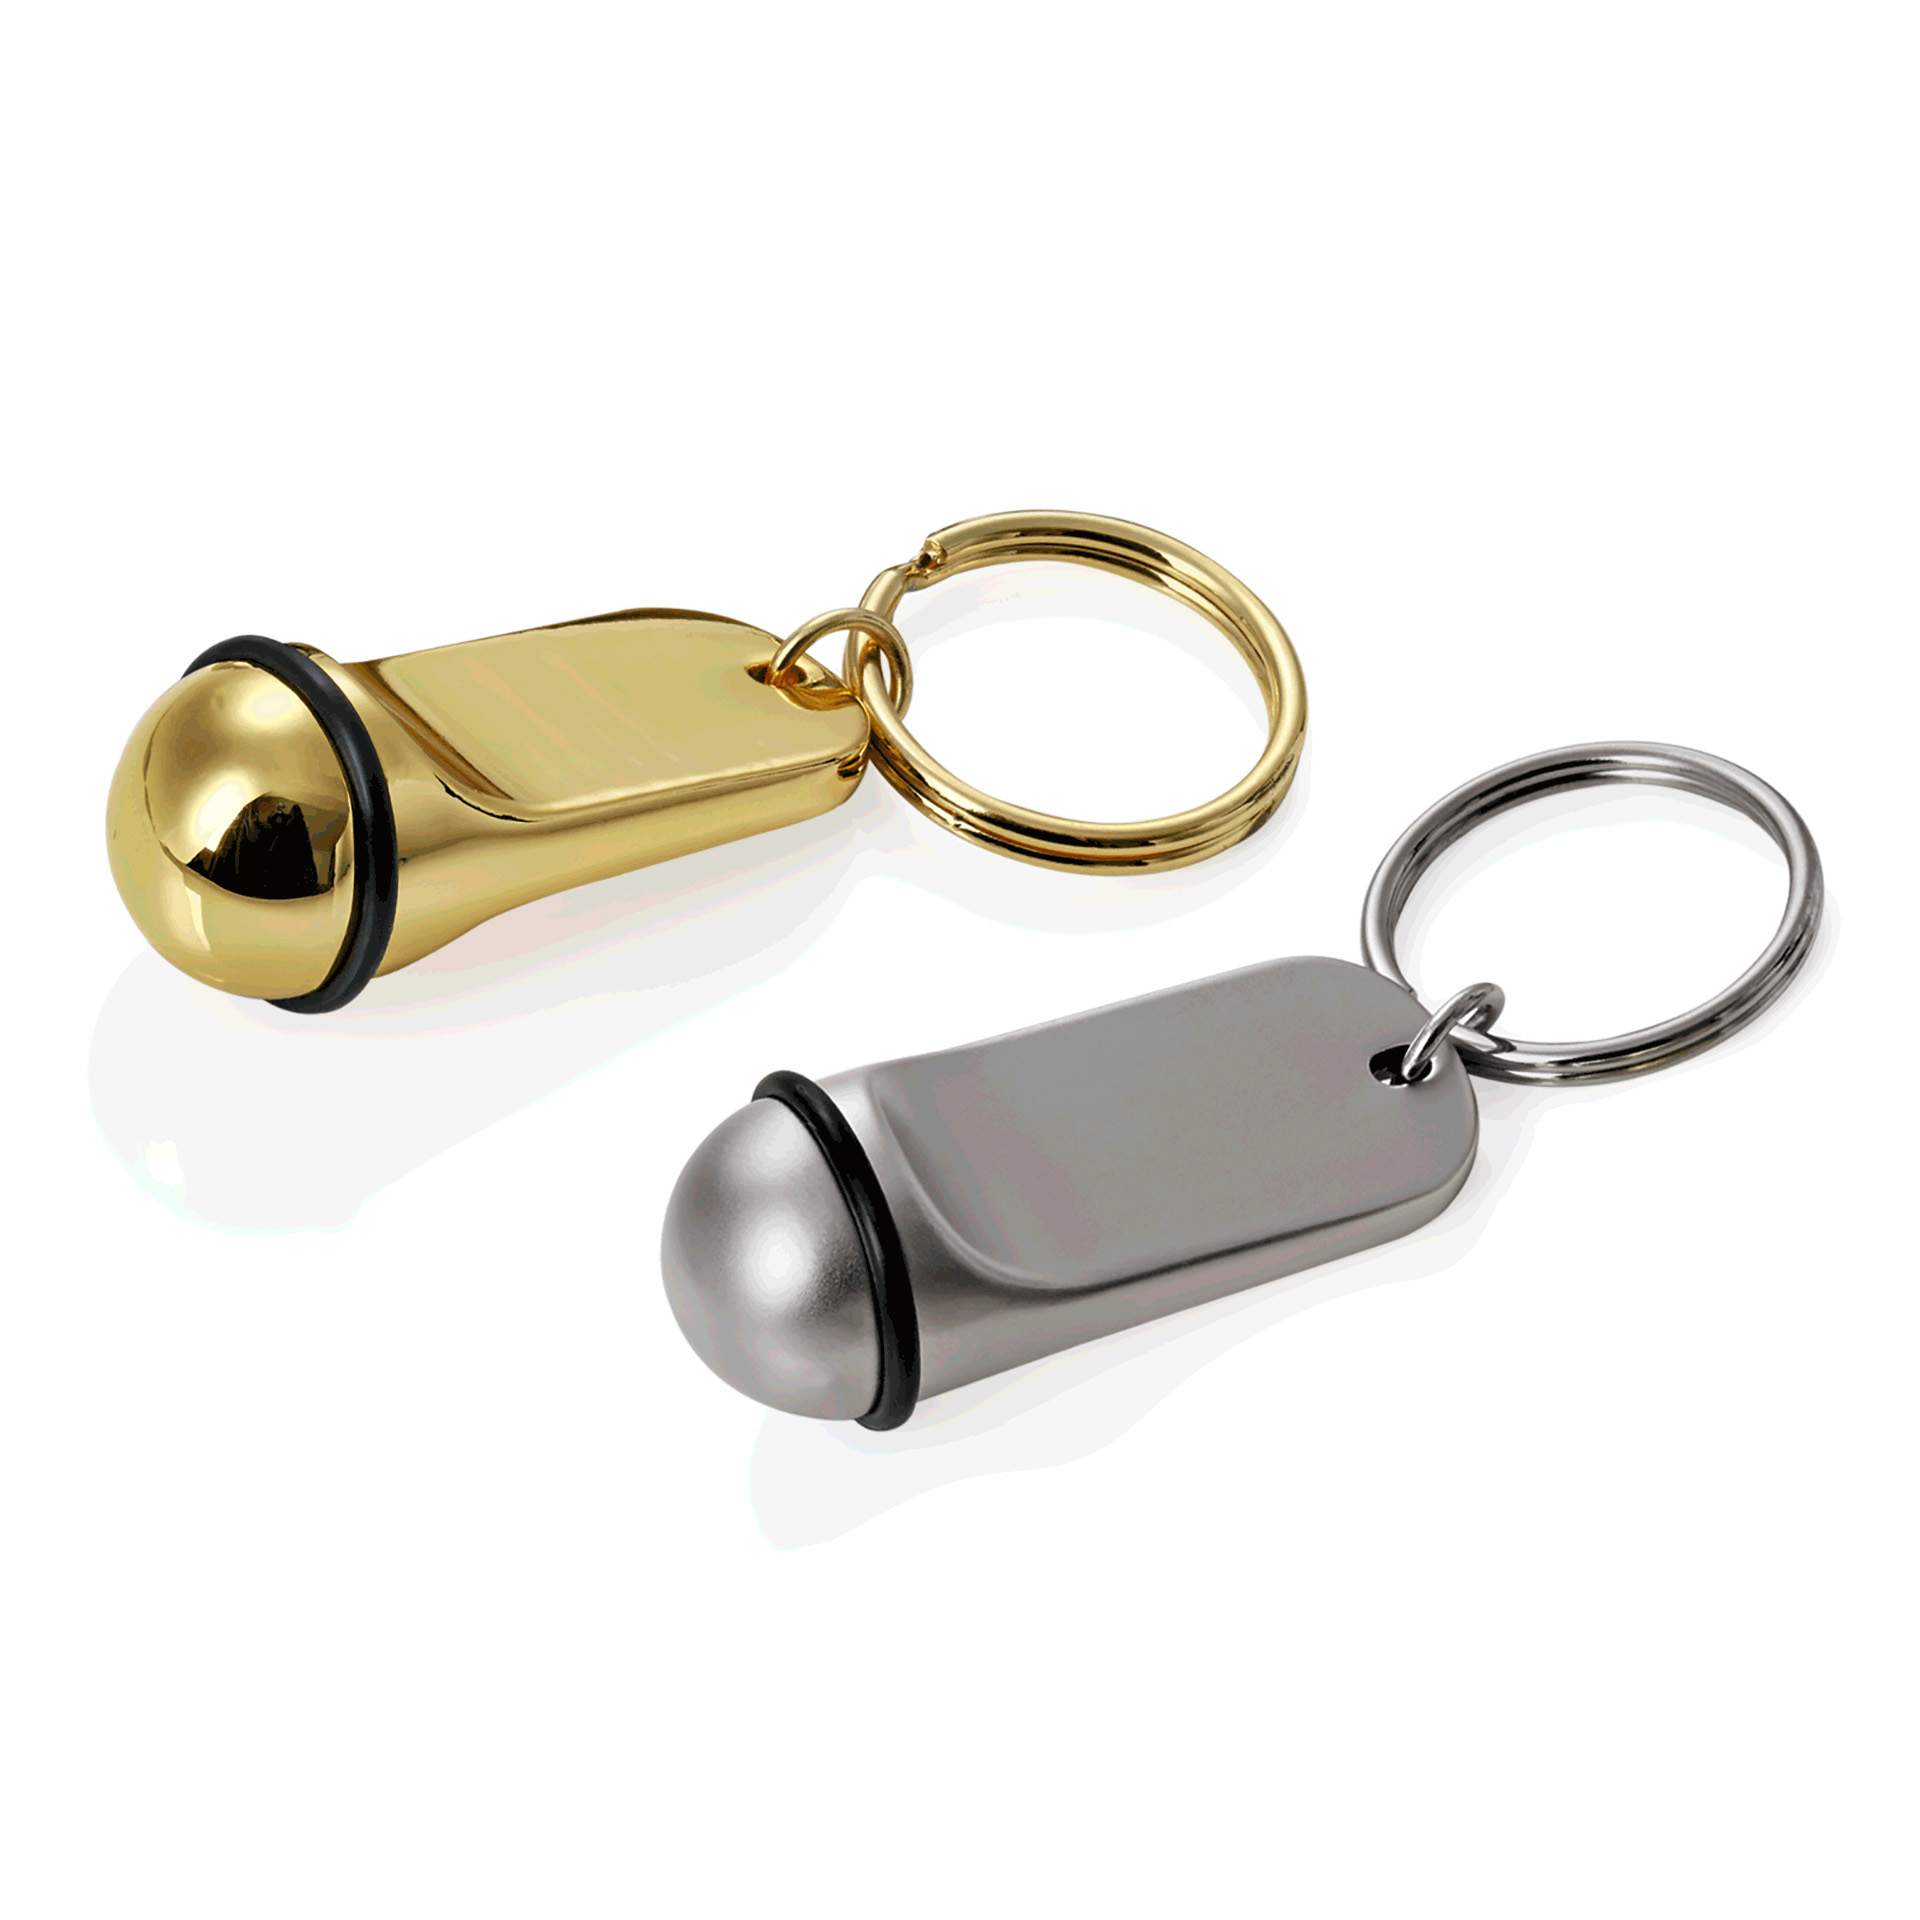 Schlüsselanhänger - ohne Gravur - gold - Abm. 2 x 5 cm - Zinkguss - 4318001-A